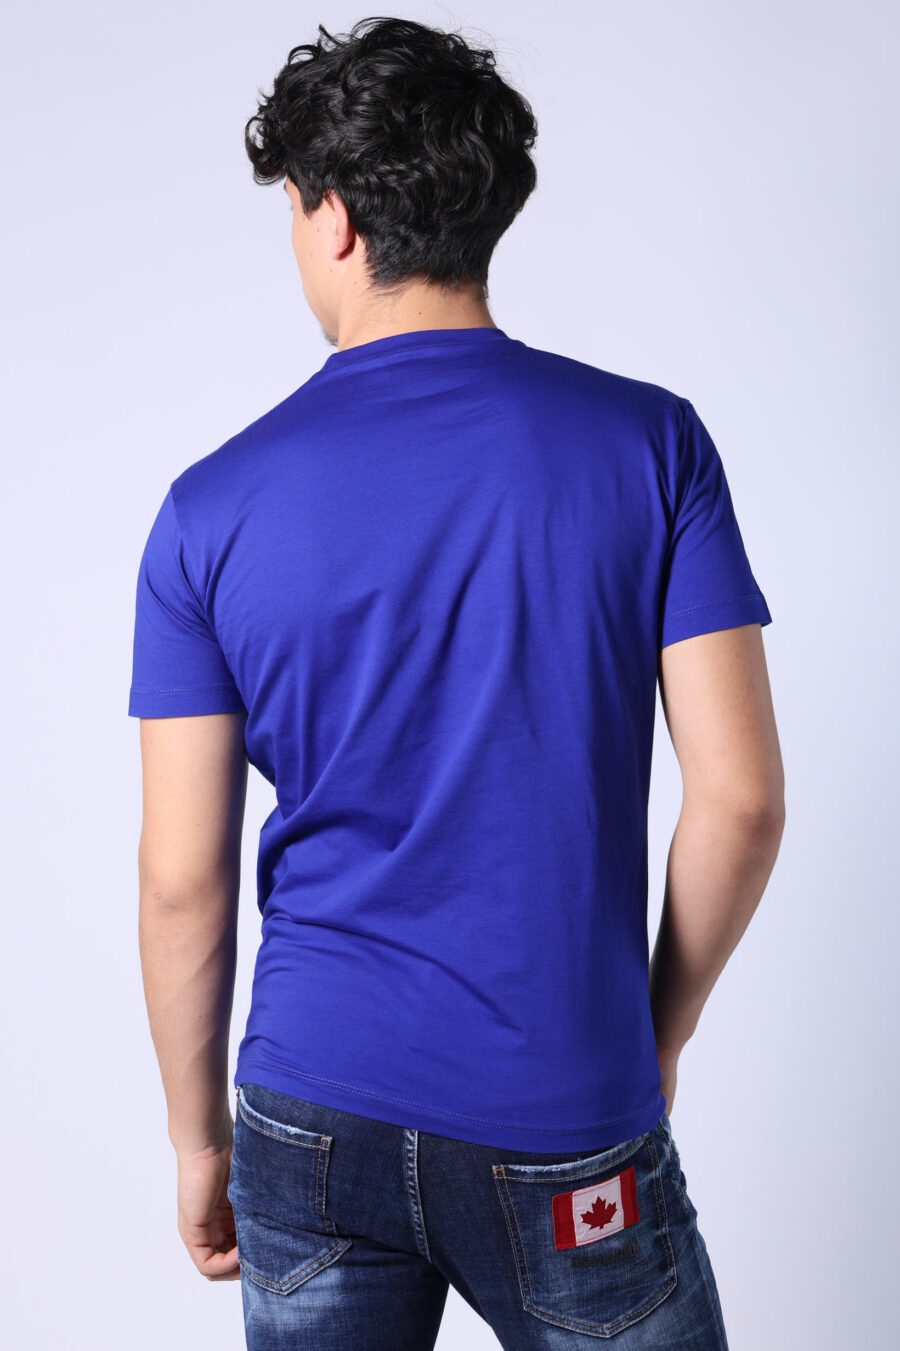 T-shirt azul elétrico com maxilogo "ícone" branco - Untitled Catalog 05401